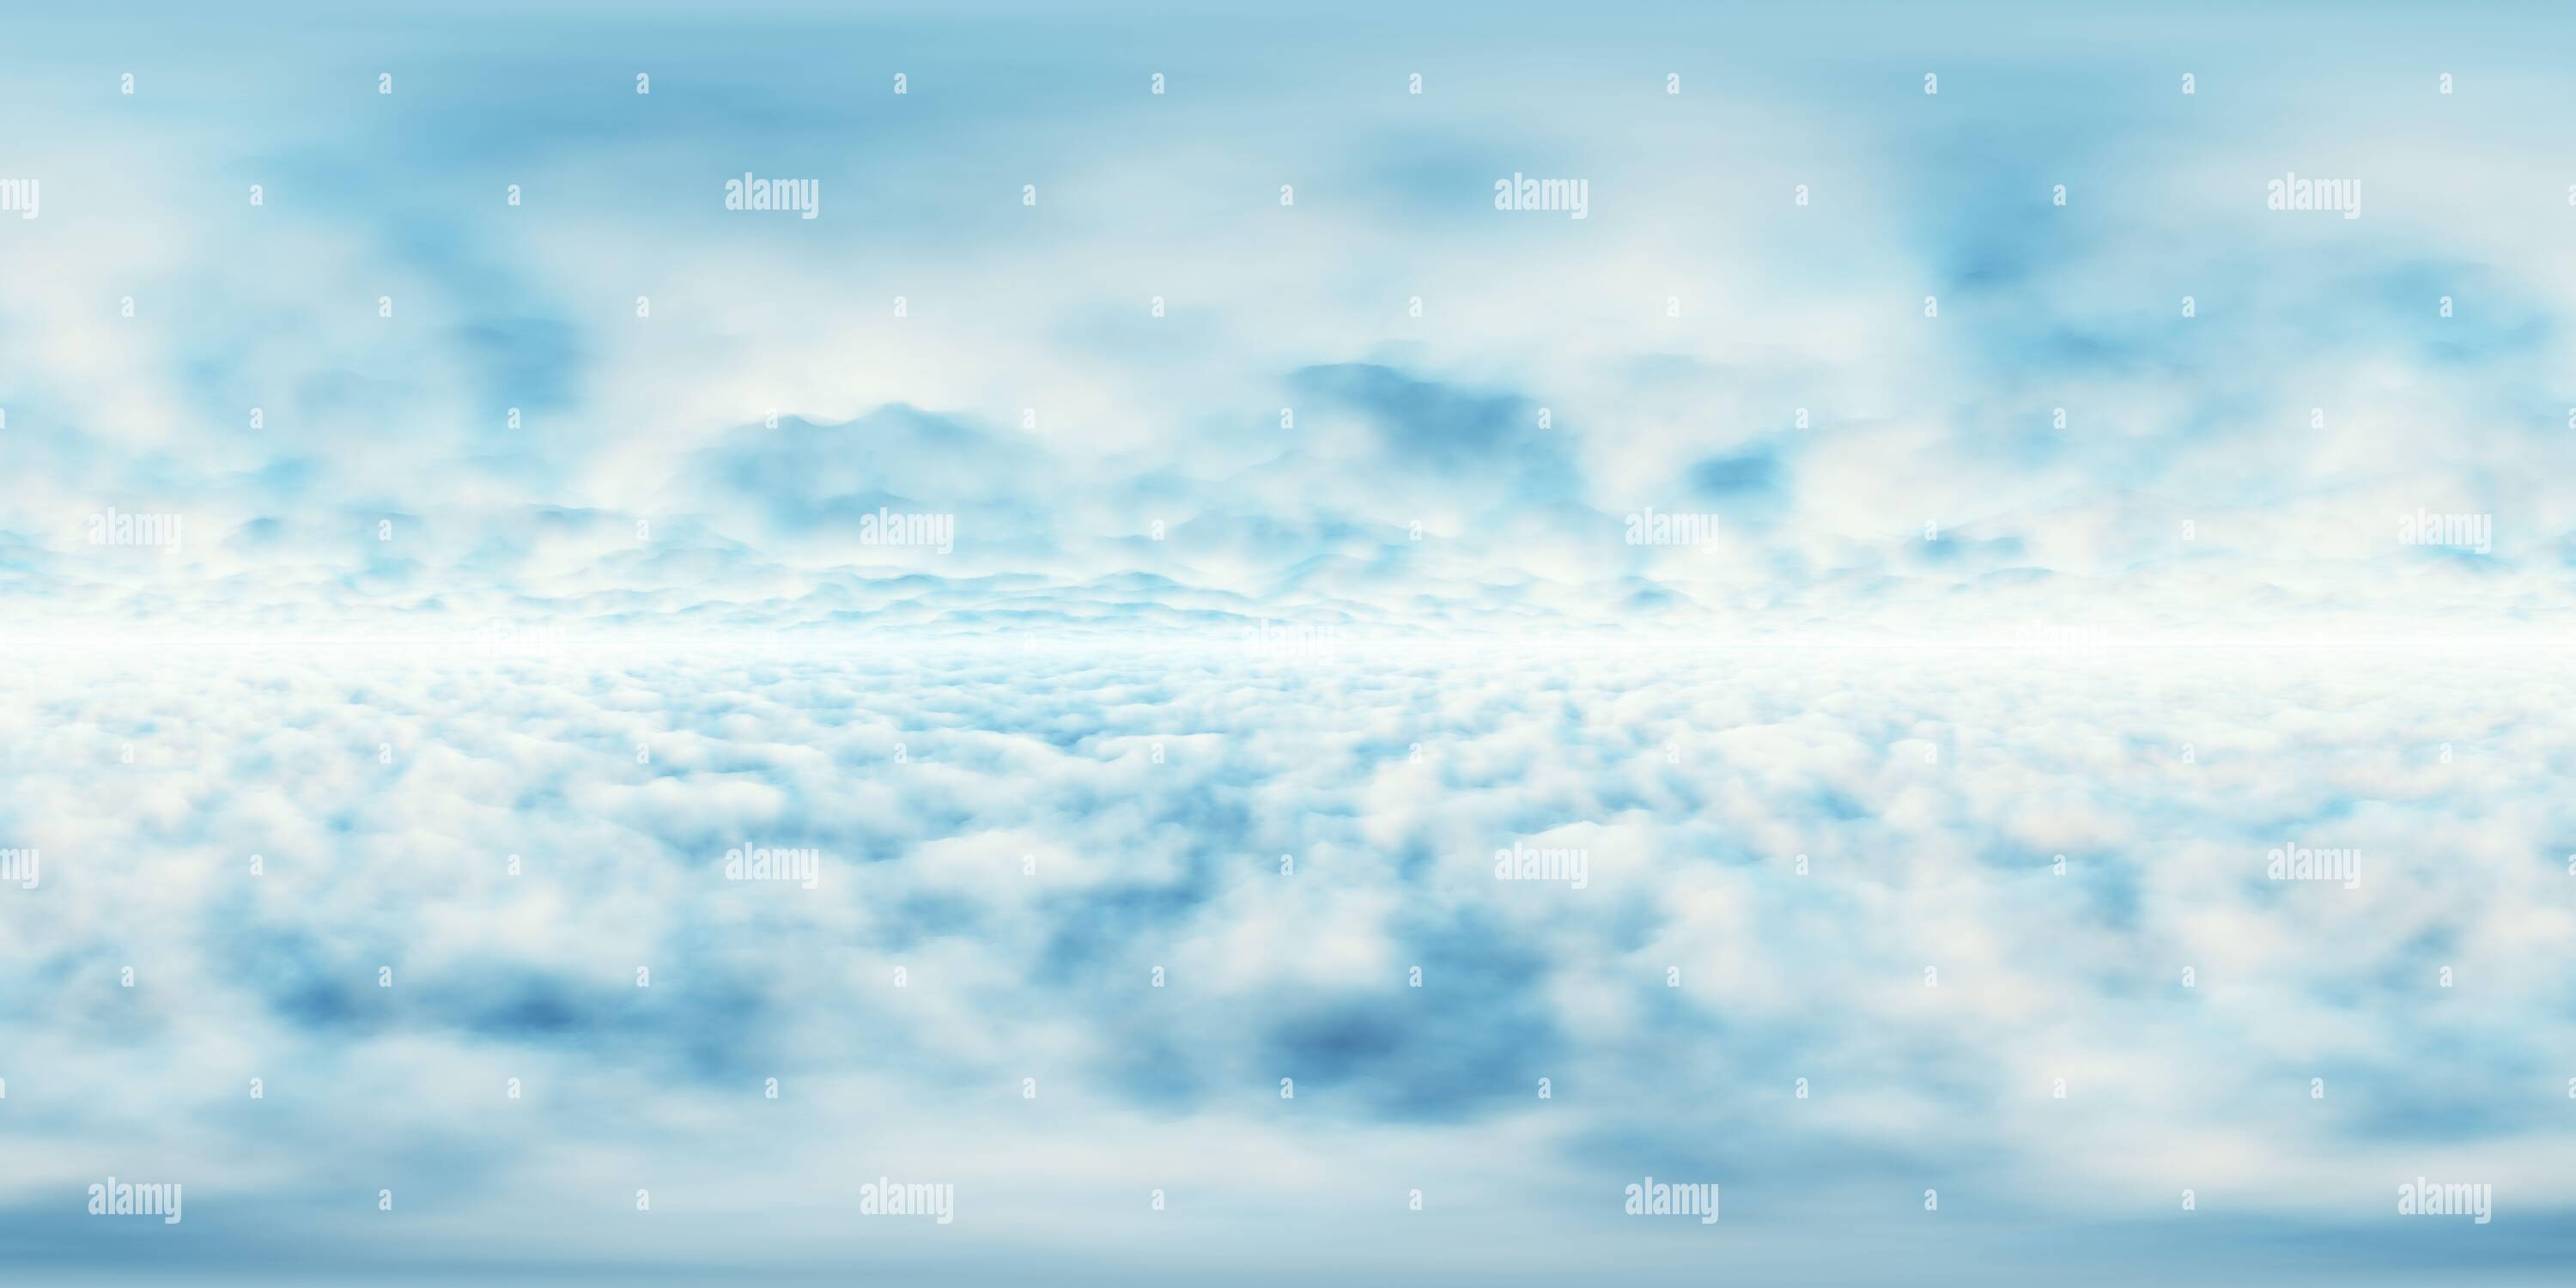 Nền trời với đám mây 360 độ: Bạn đang muốn tìm kiếm một bức hình nền độc đáo và đầy ấn tượng để trang trí cho điện thoại, máy tính hay laptop của mình? Hãy xem ngay hình ảnh nền trời với đám mây 360 độ kỳ diệu này và cảm nhận sự khác biệt!